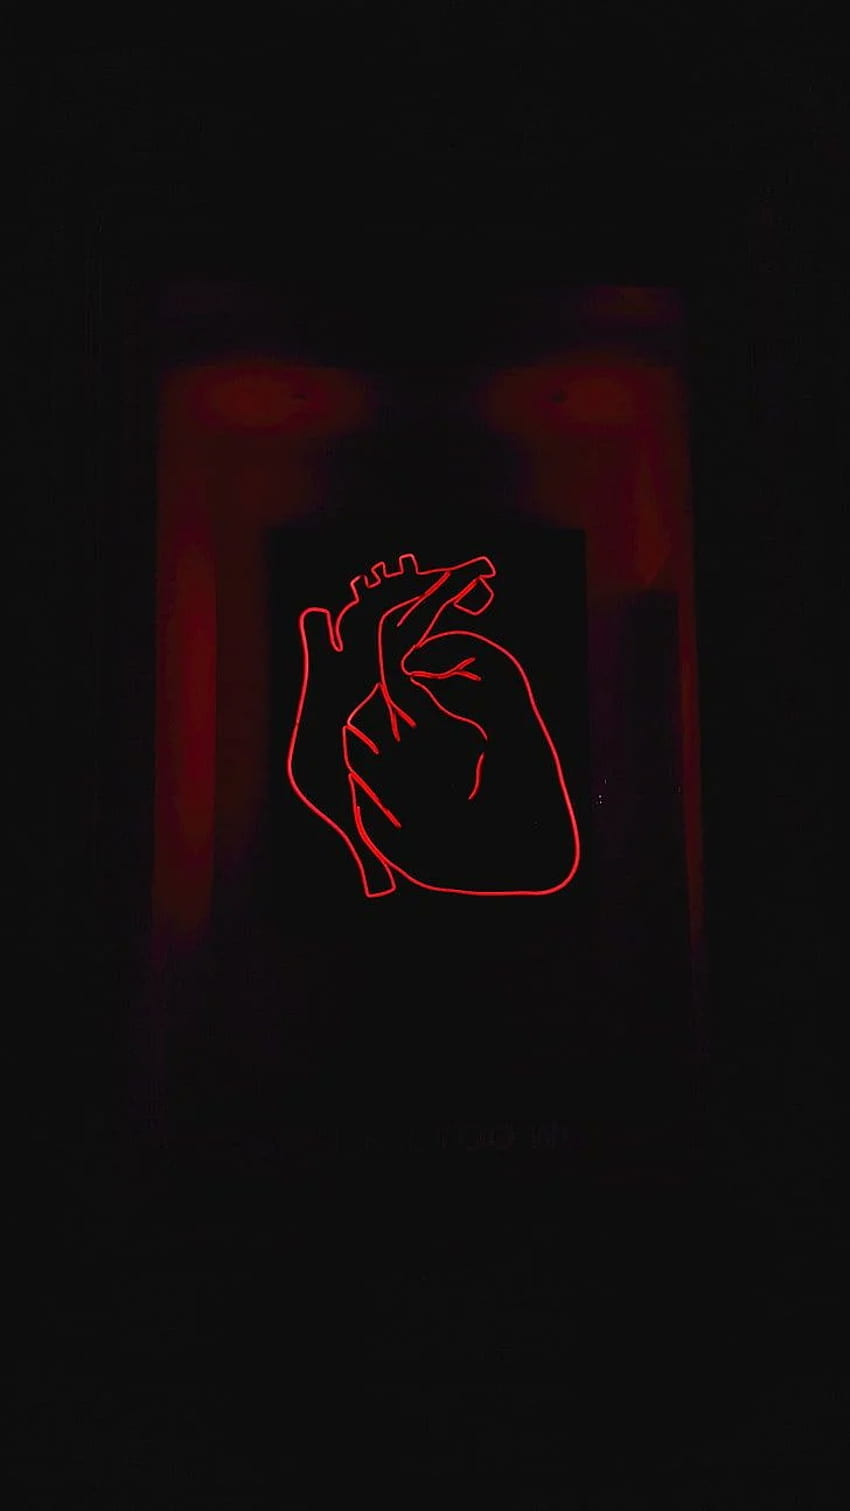 : Herz, Neon, dunkel, rot, Studioaufnahme, keine Menschen, Abstract Dark Heart HD-Handy-Hintergrundbild